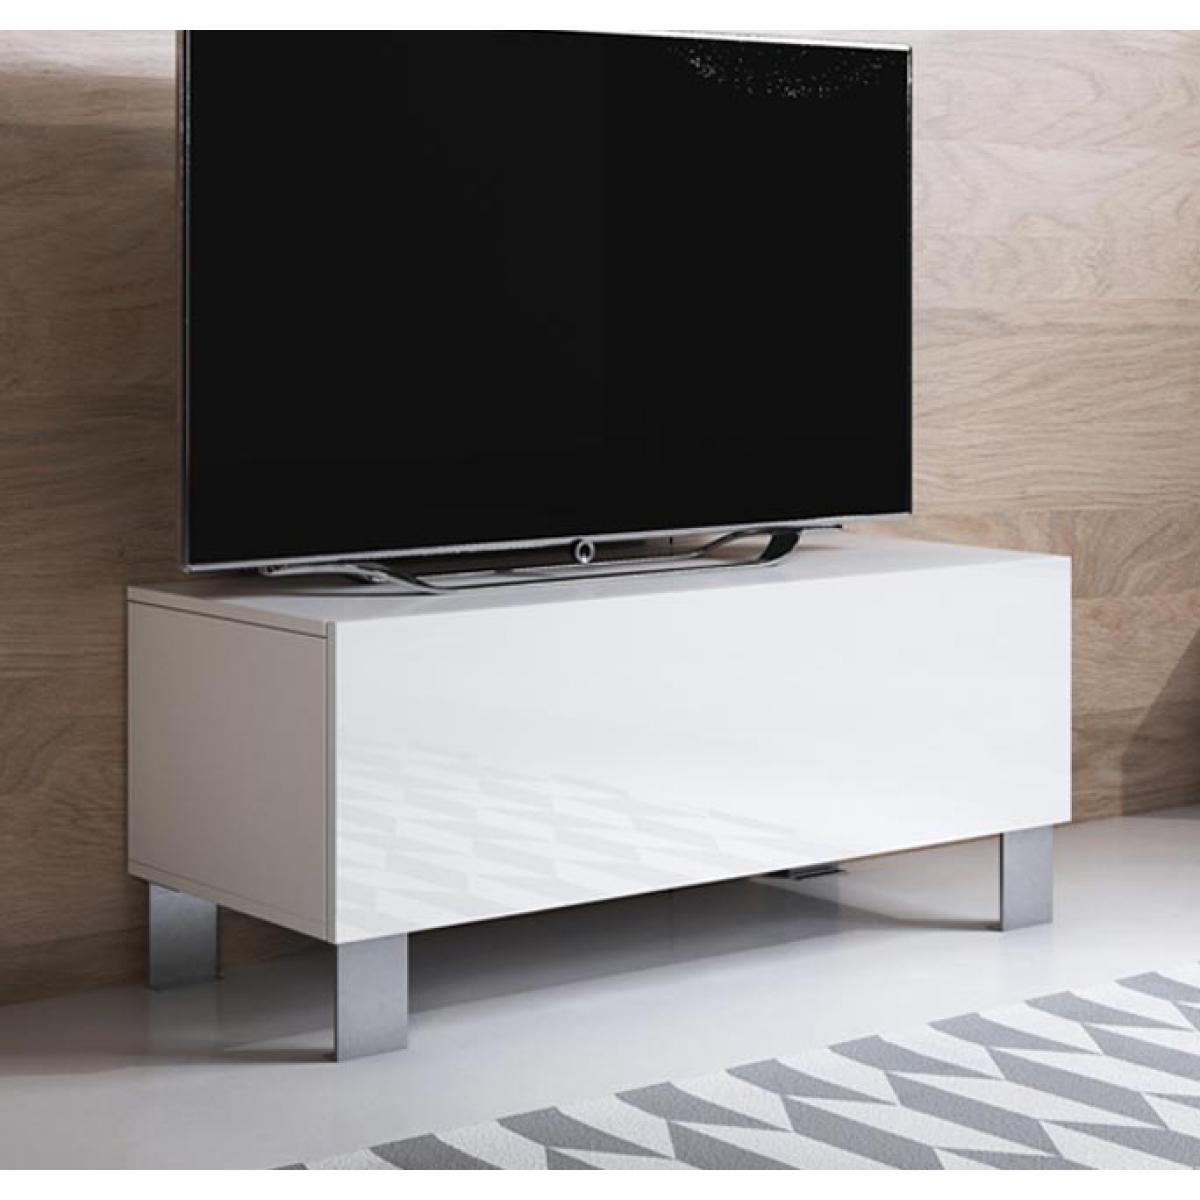 Design Ameublement - Meuble TV modèle Luke H1 (100x42cm) couleur blanc avec pieds en aluminium - Meubles TV, Hi-Fi